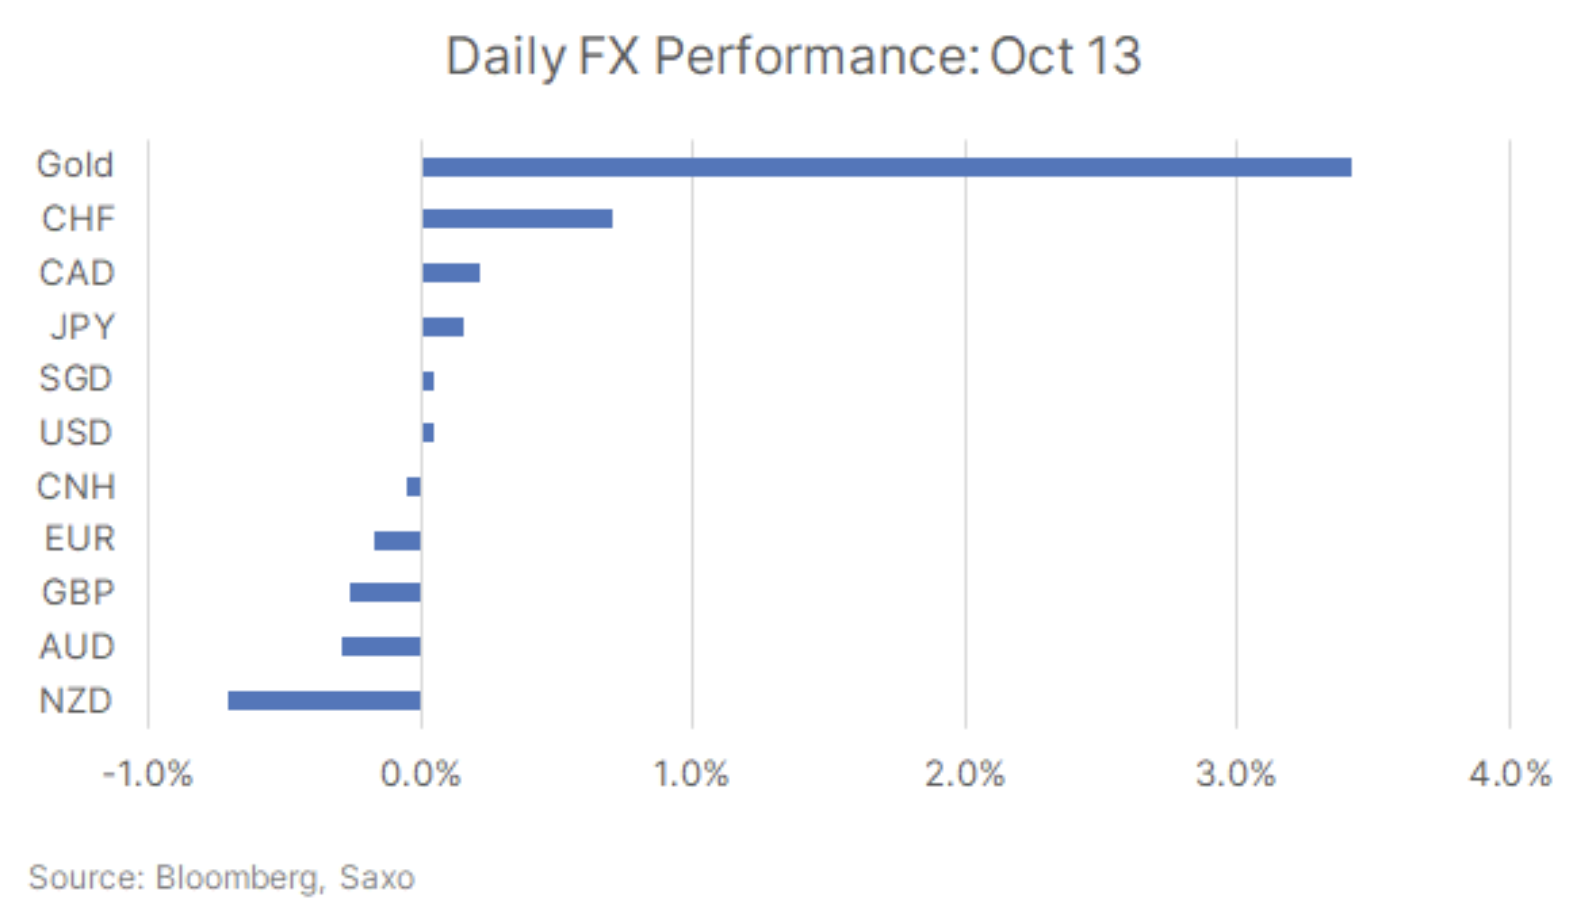 Tägliche FX-Performance am 13. Oktober